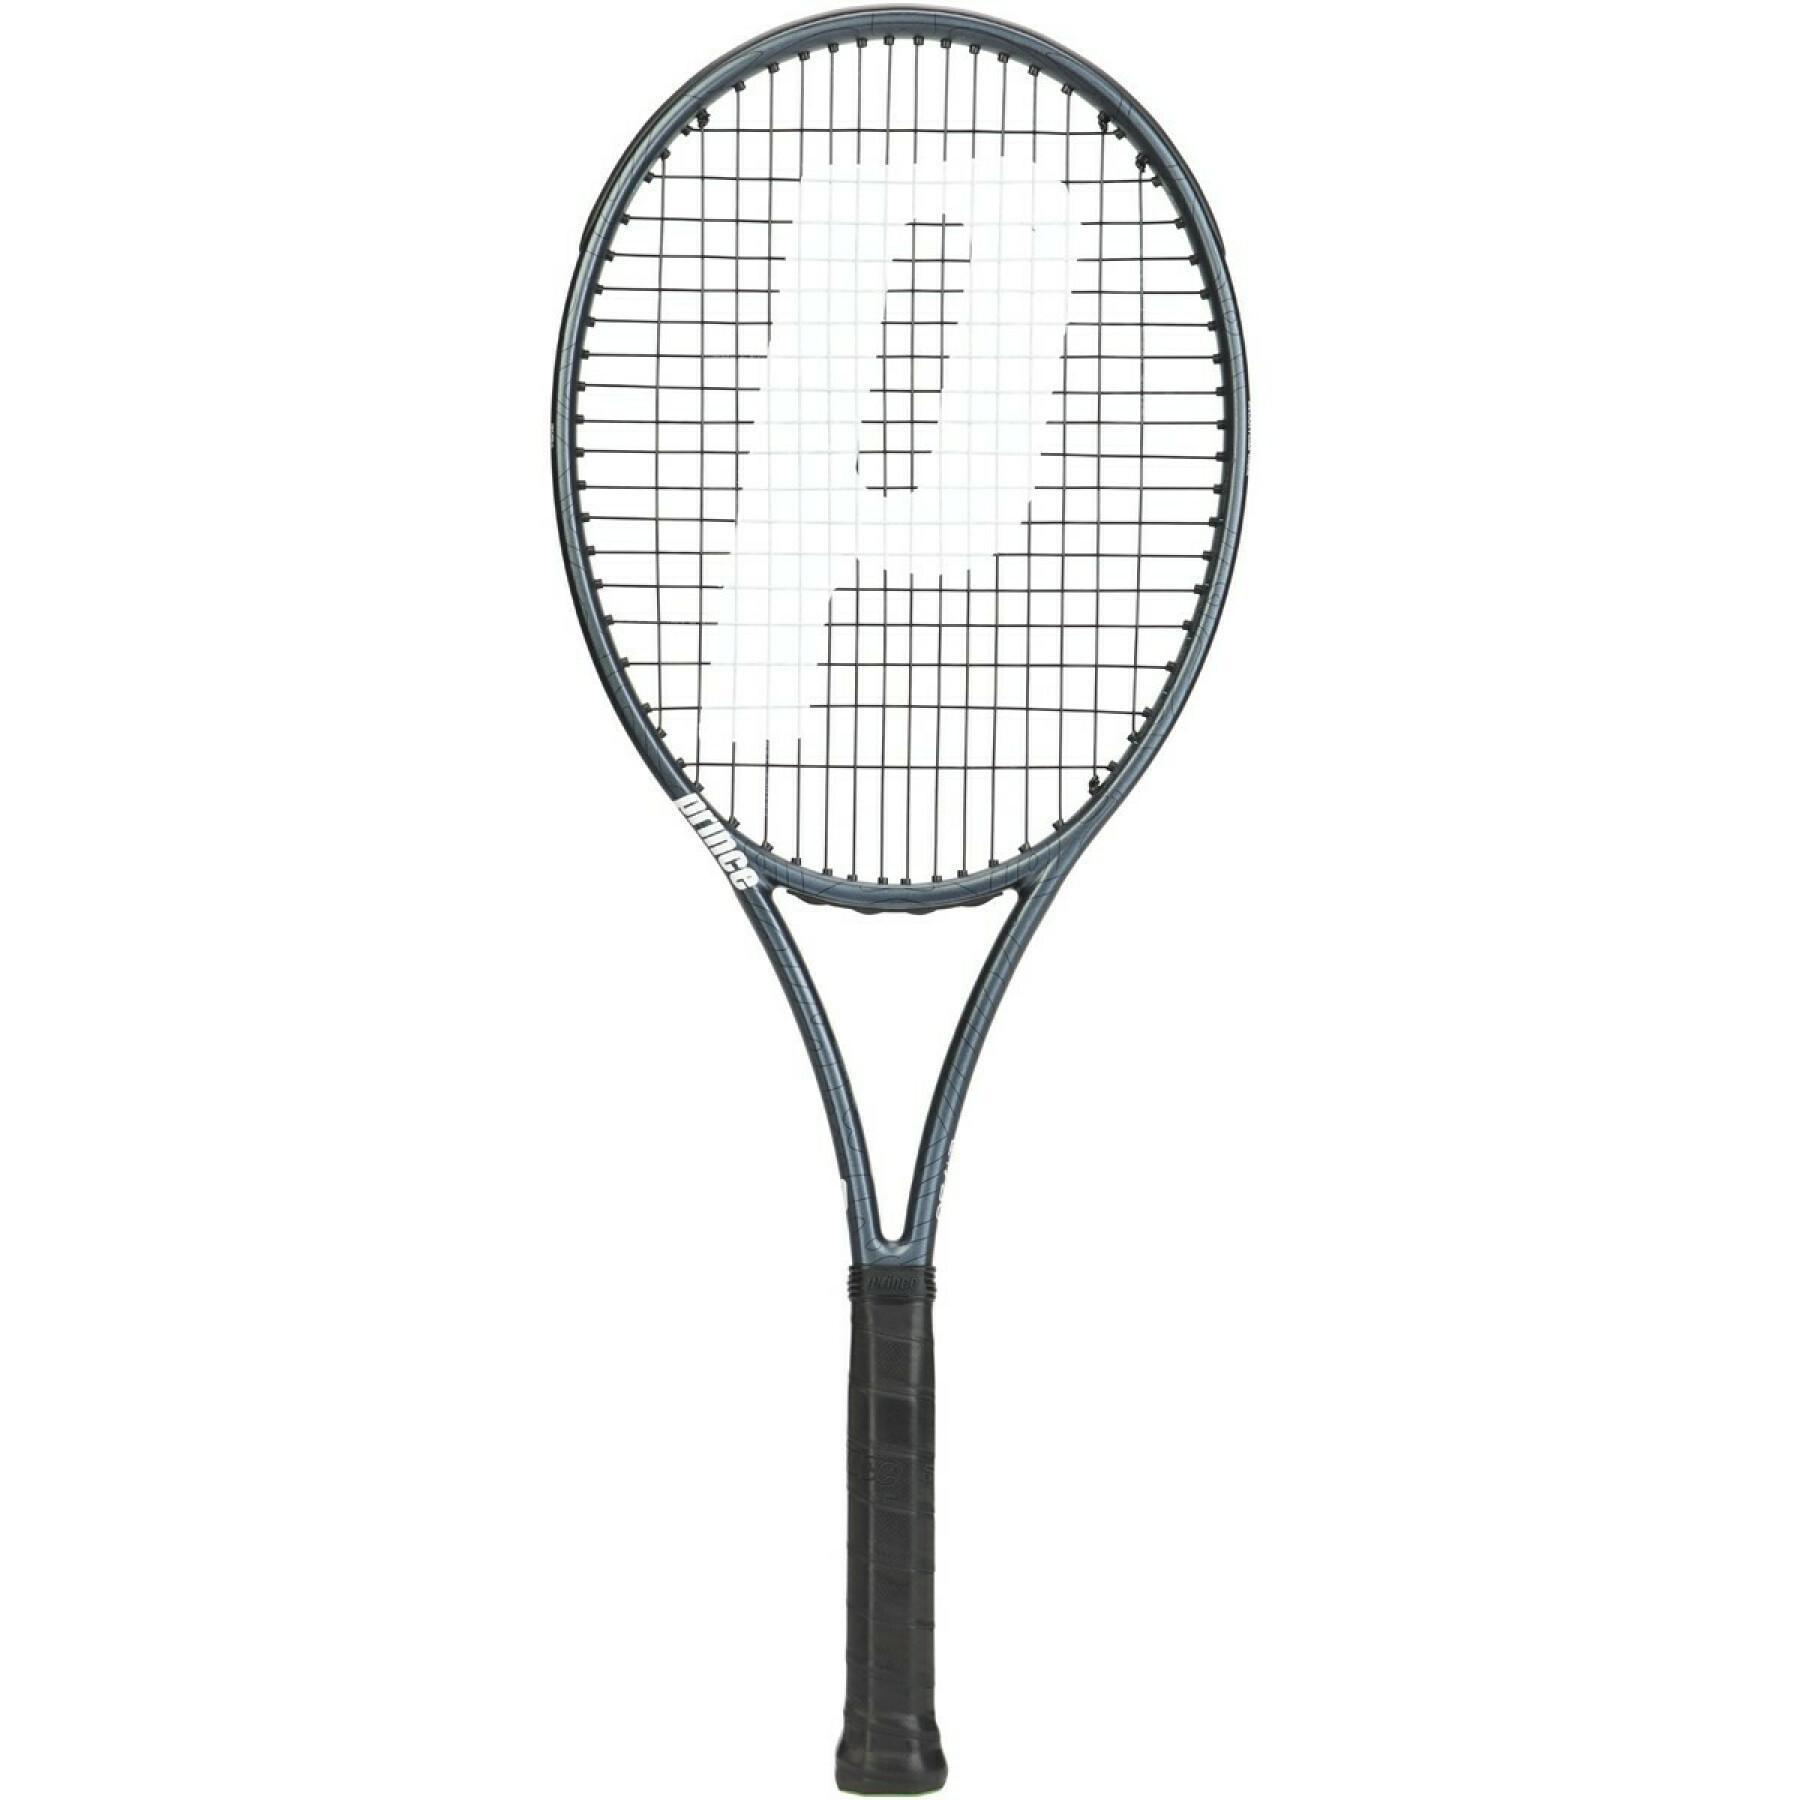 Raquette de tennis Prince phantom 100x (290gr)